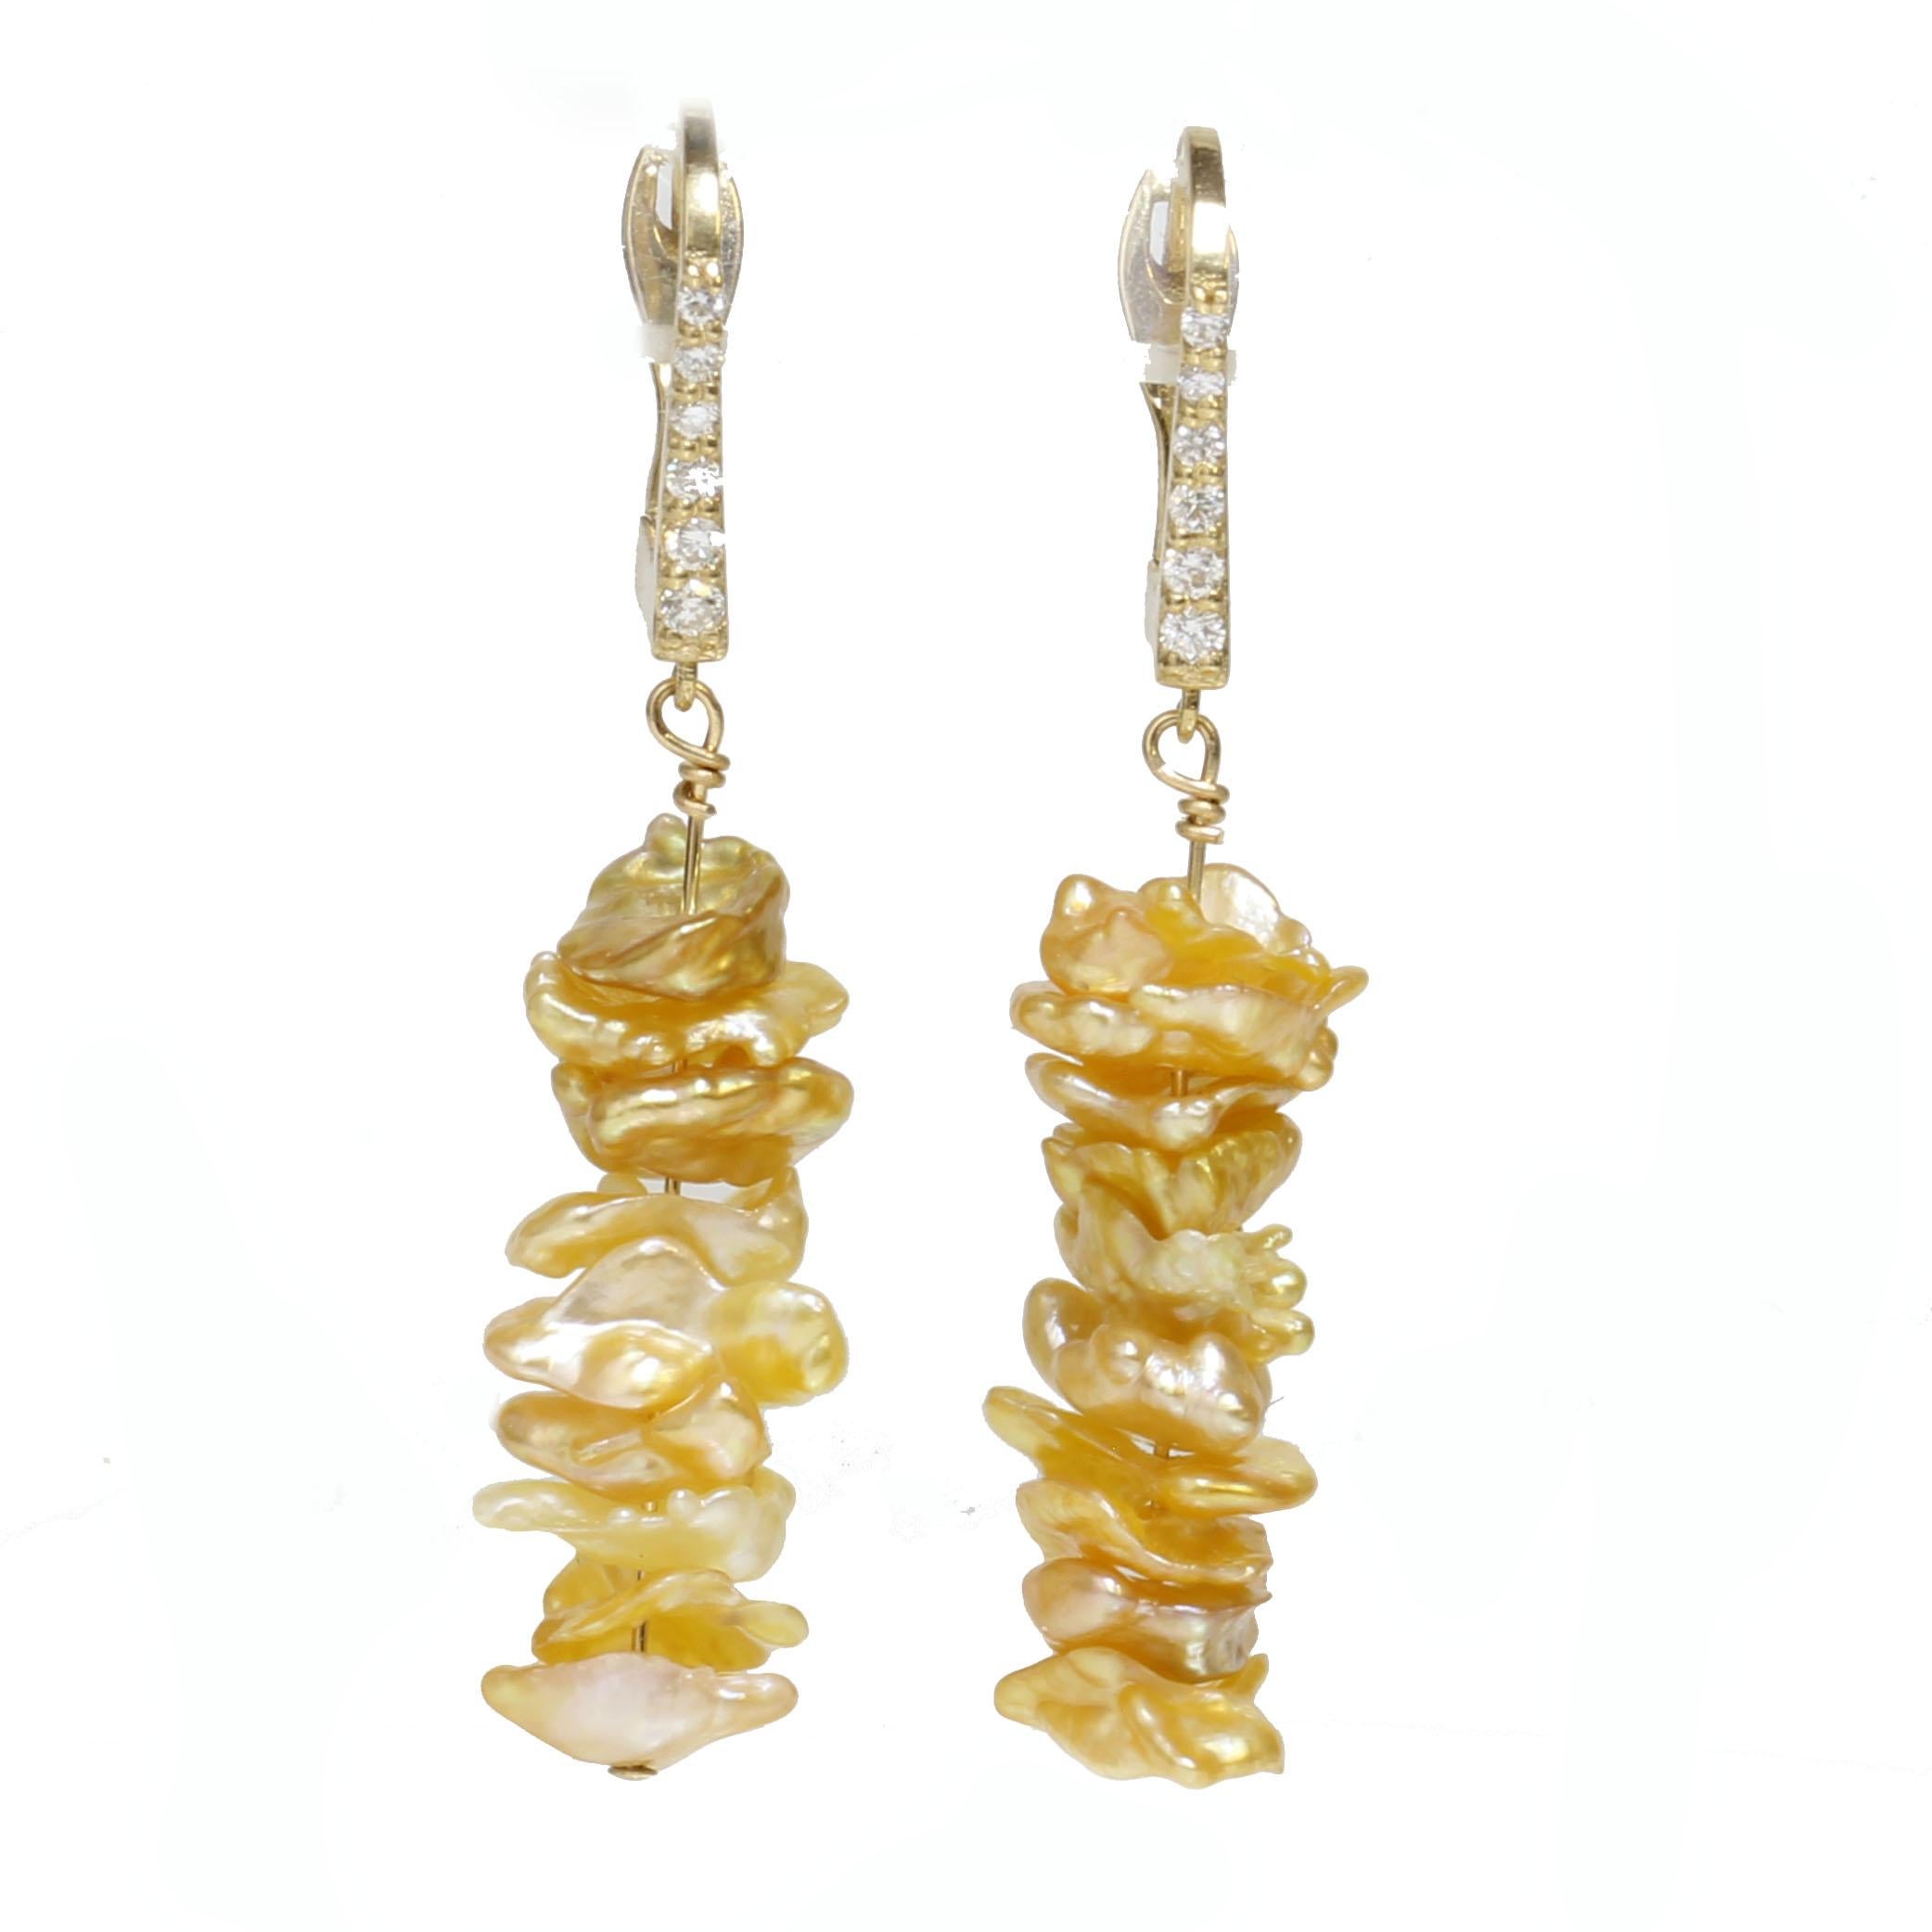 Boucles d'oreilles pendantes en perles de mer du sud dorées avec crochet en diamant. Les boucles d'oreilles sont serties en or jaune 14k avec 0,12ct de diamants.  La longueur totale des boucles d'oreilles est de 1